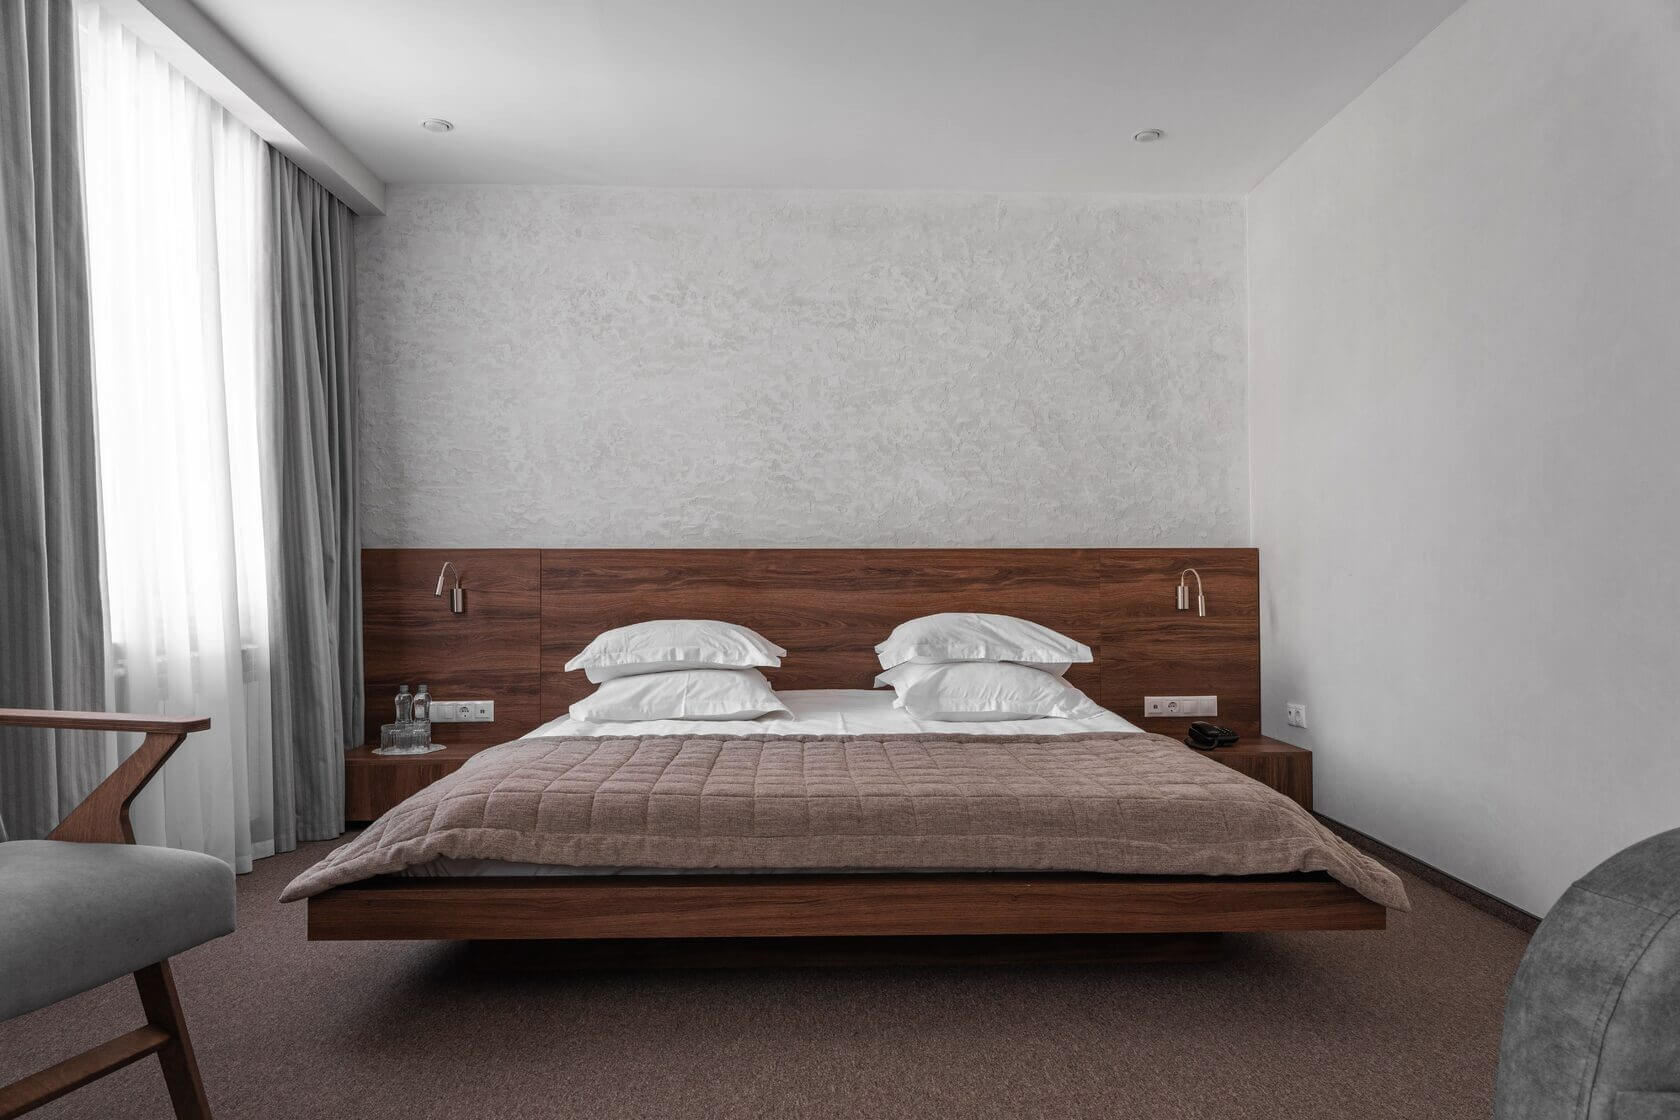 Кровать в номере - низкопольная, с деревянным основанием и изголовьем.